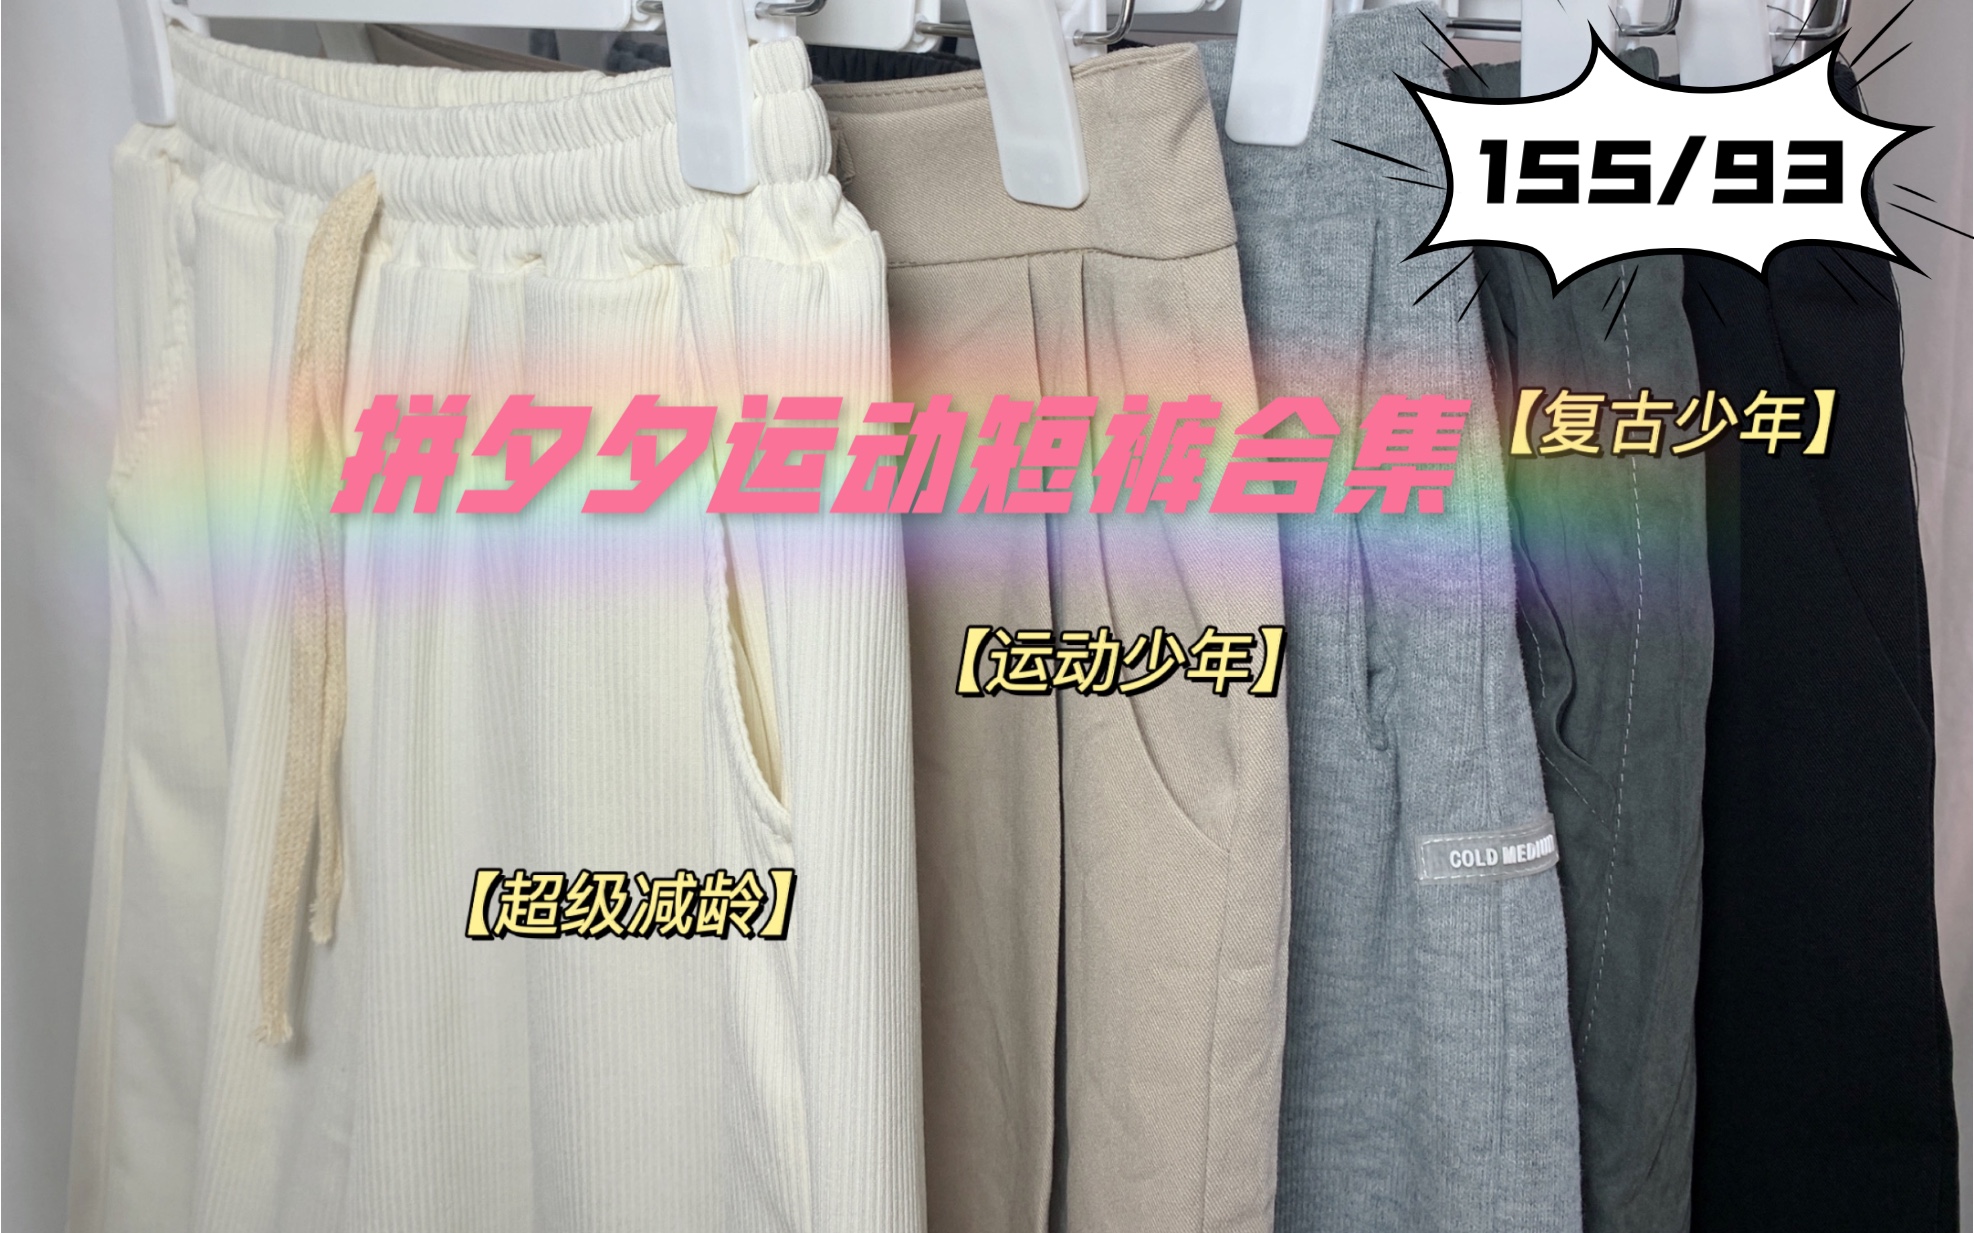 155/93｜拼夕夕运动短裤测评合集